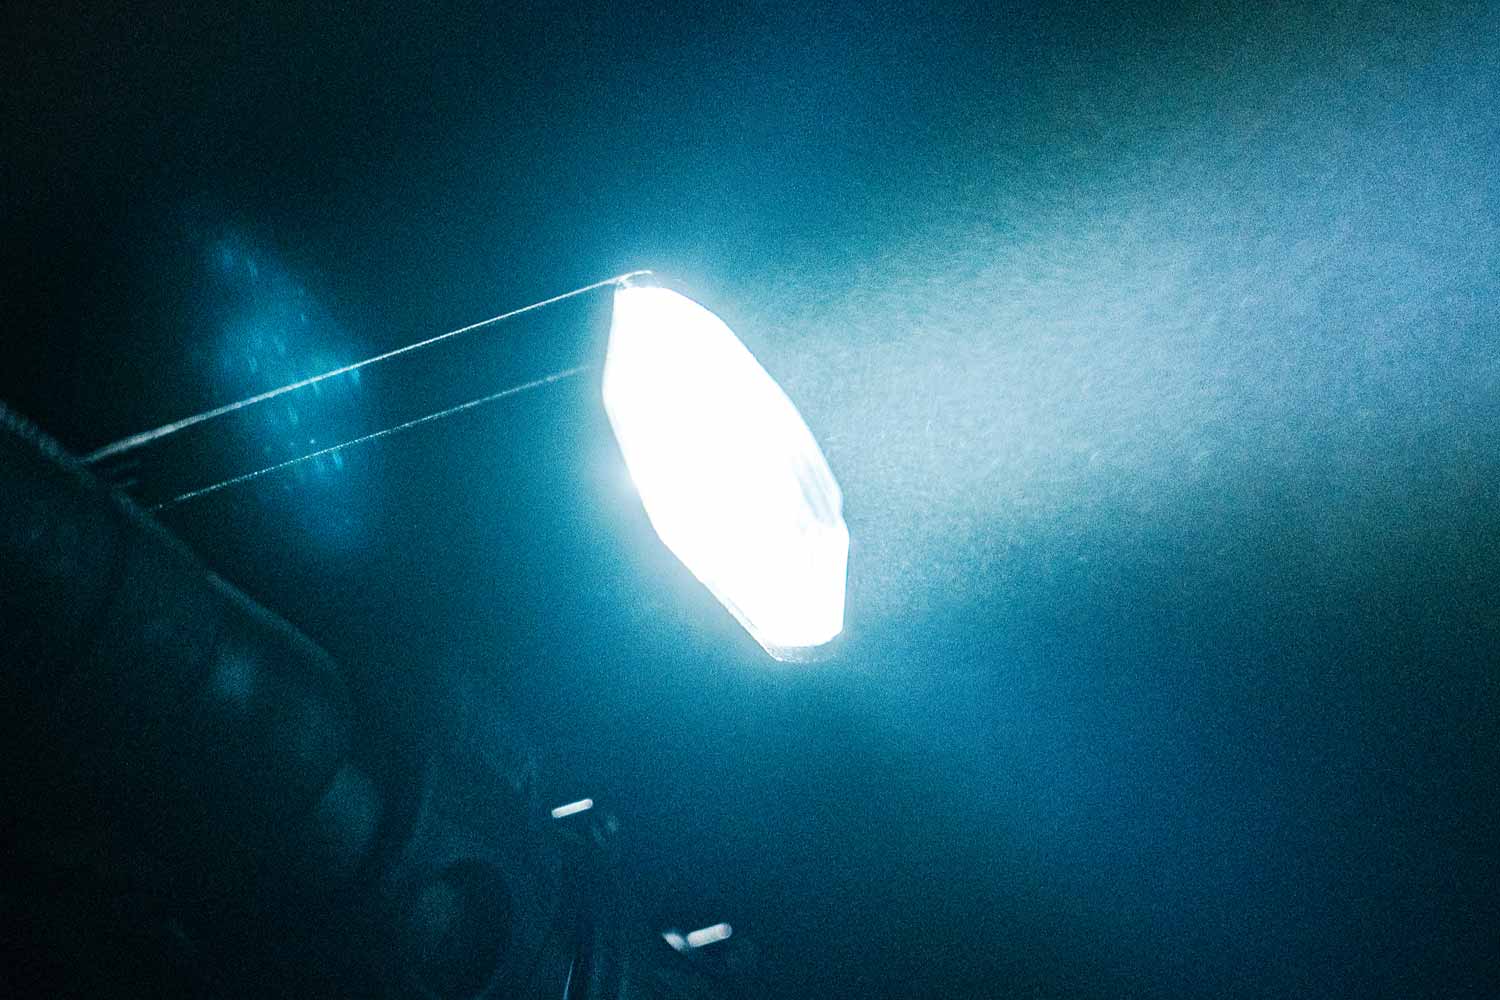 LED bike light highlighting the engineered optical lens design 